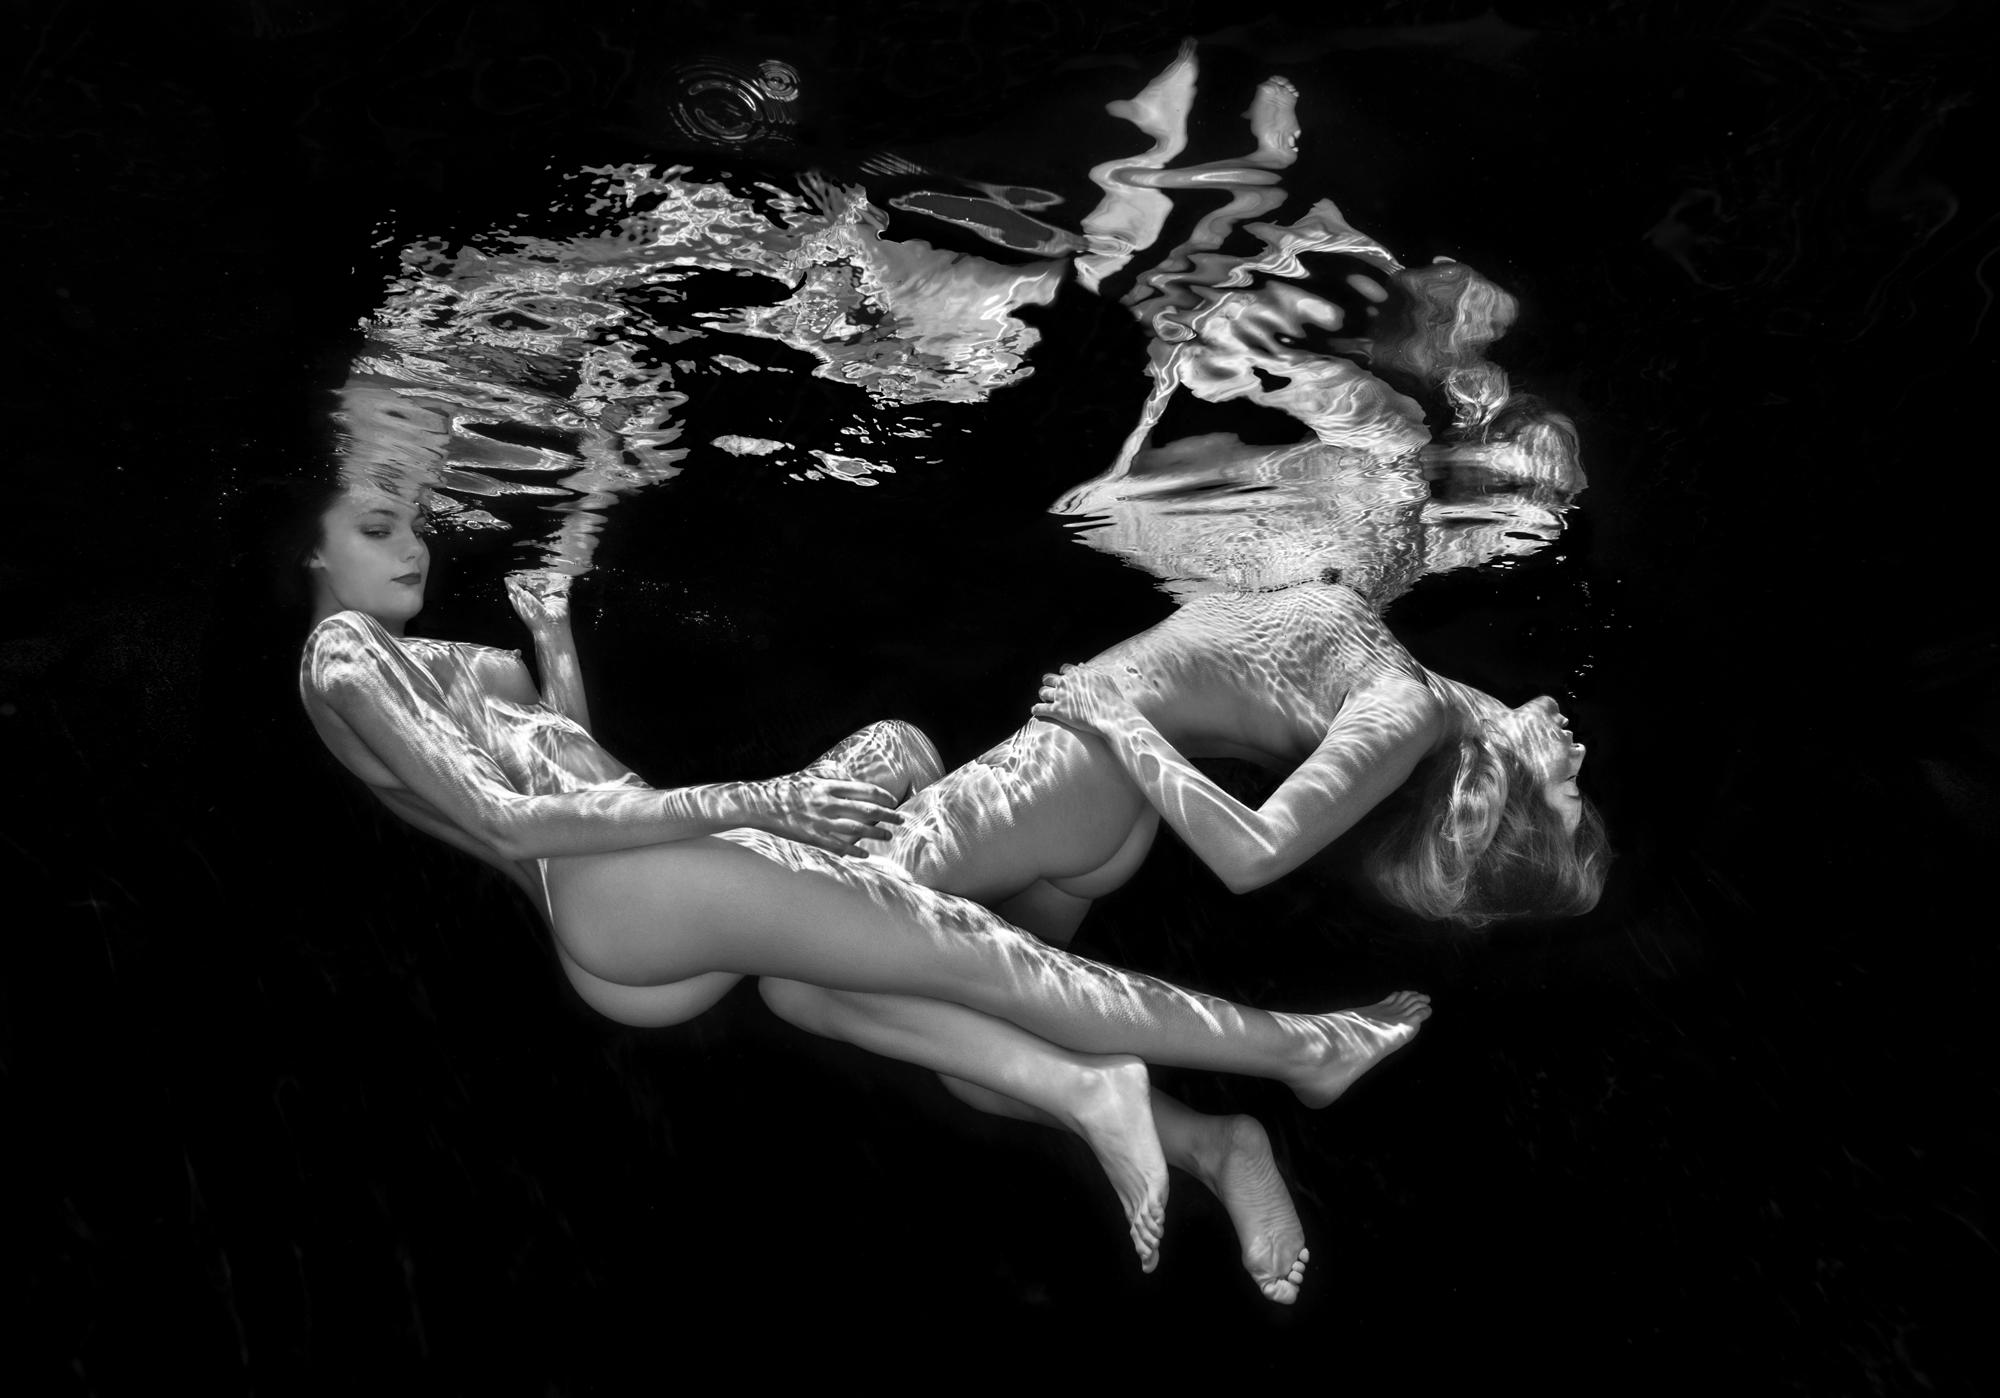 Nude Photograph Alex Sher - Double Trouble - photographie sous-marine de nu en noir et blanc - tirage papier 17 x 24".